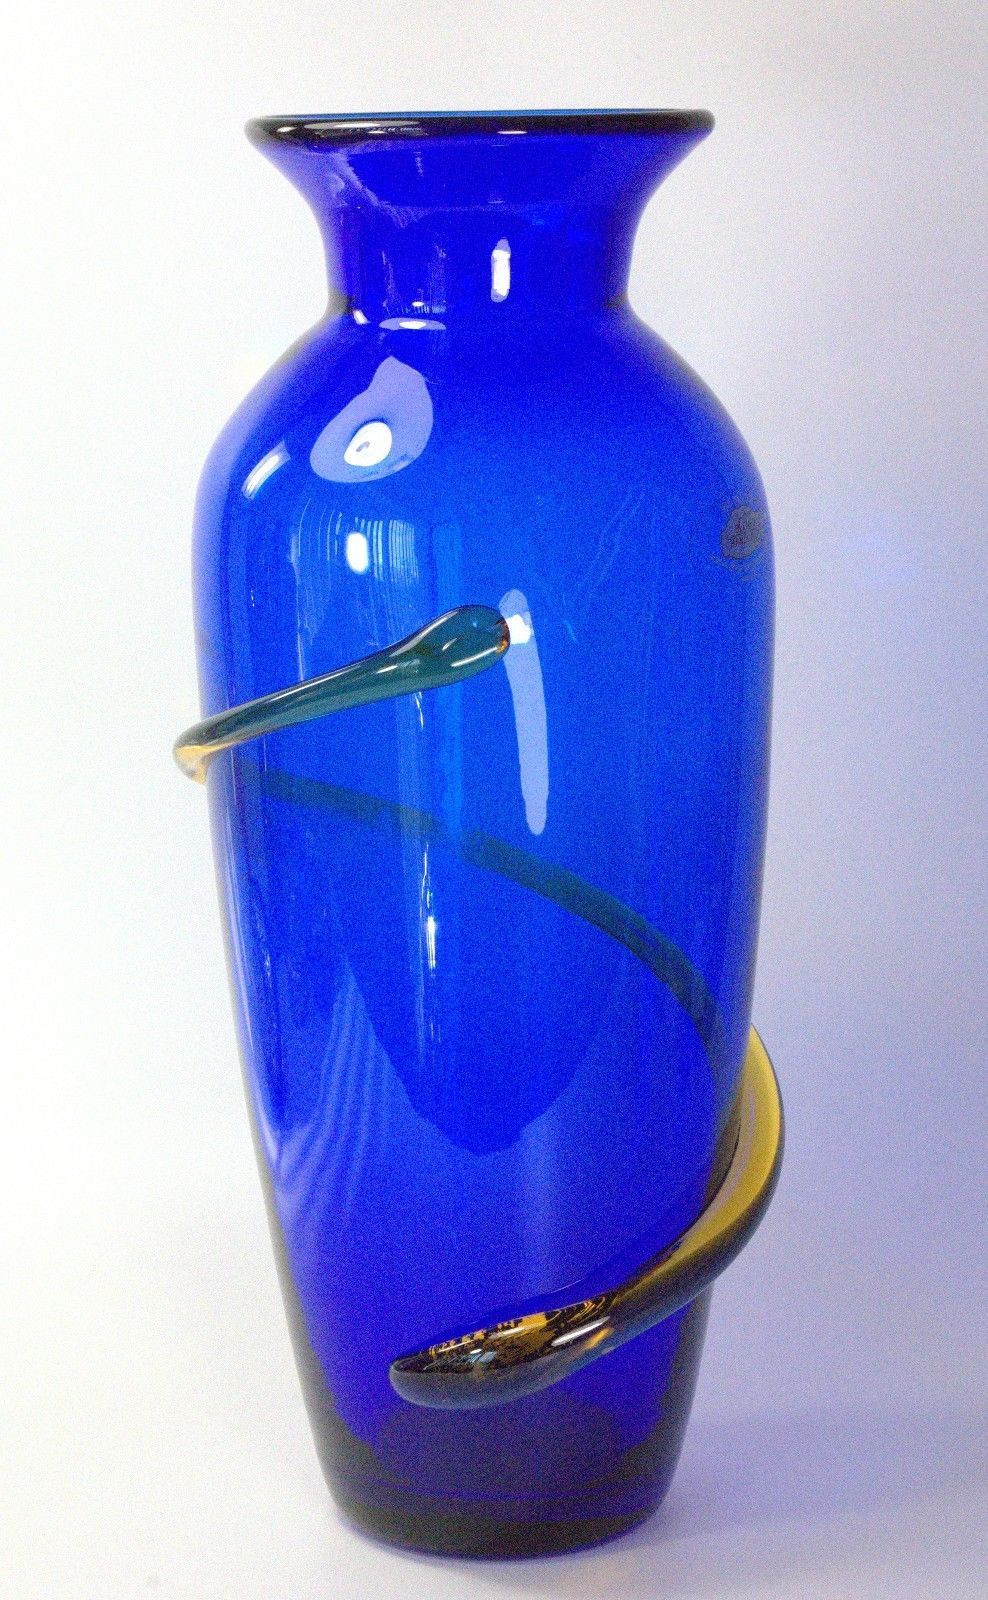 vintage blue vase of vintage blenko cobalt blue vase pitcher yellow threaded curving for vintage blenko cobalt blue vase pitcher yellow threaded curving signed 2000 89 99 vintage blenko